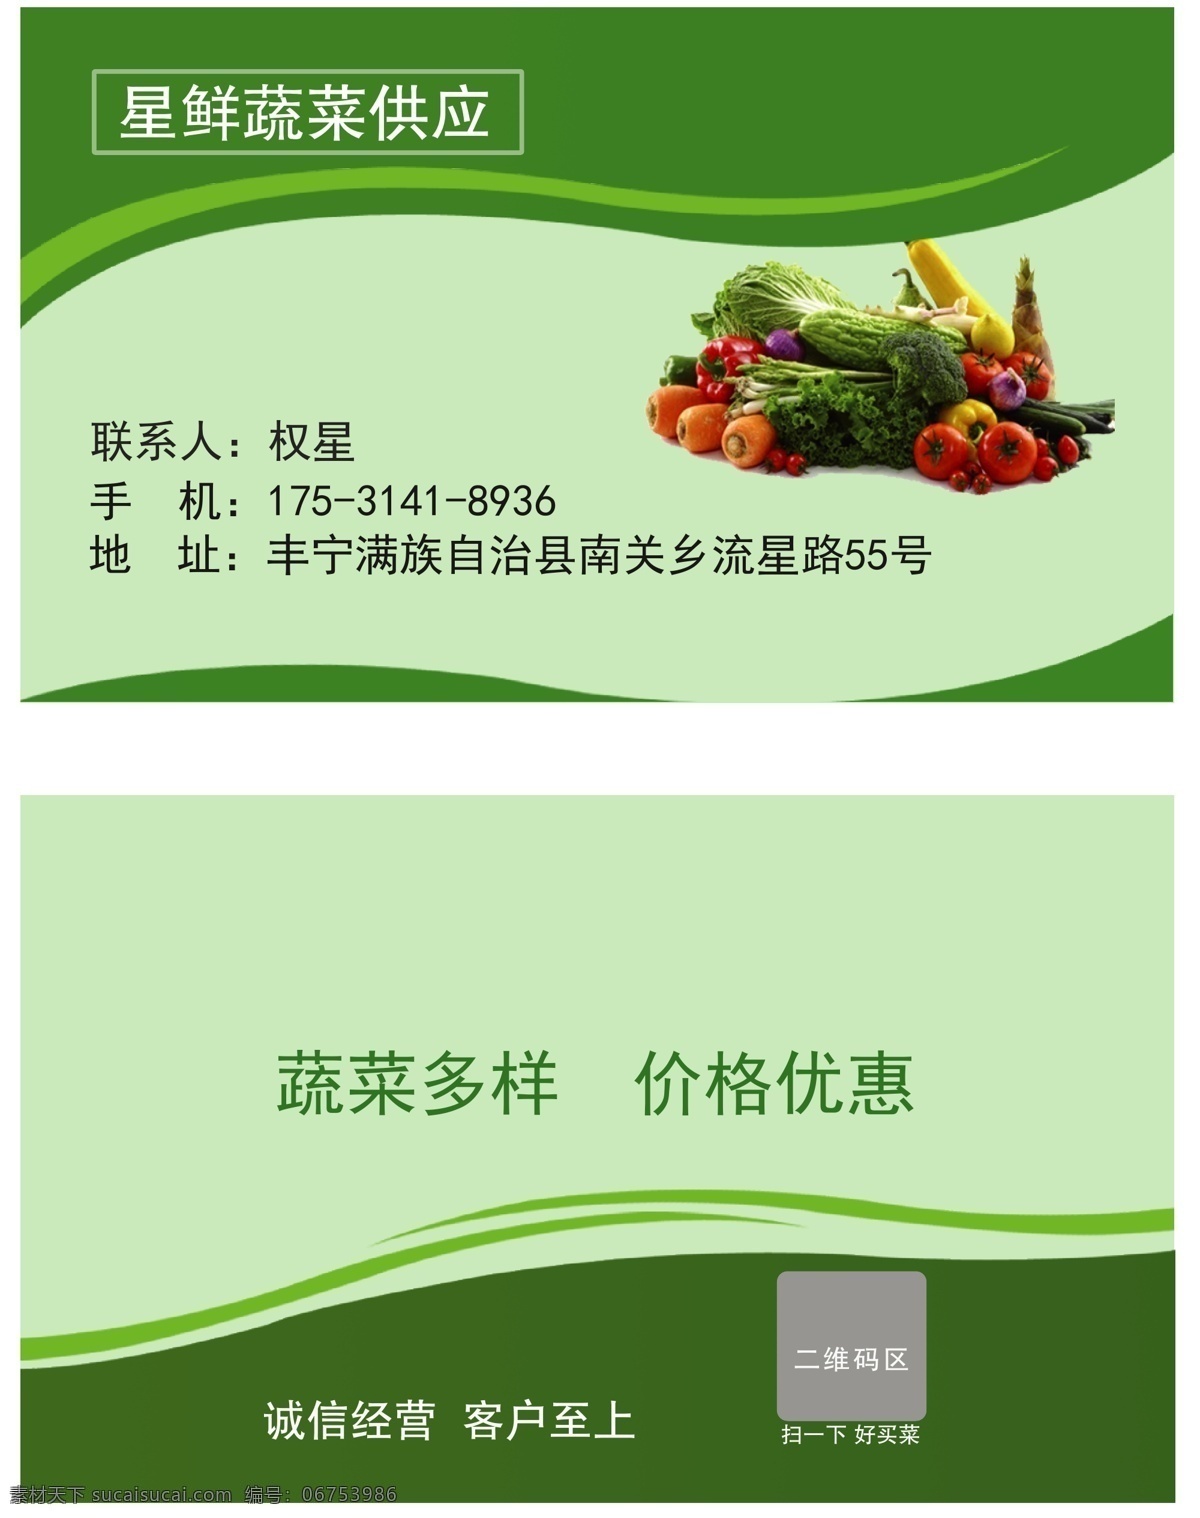 蔬菜销售名片 蔬菜 蔬菜名片 个人名片 蔬菜销售 卖菜 名片模板 名片卡片